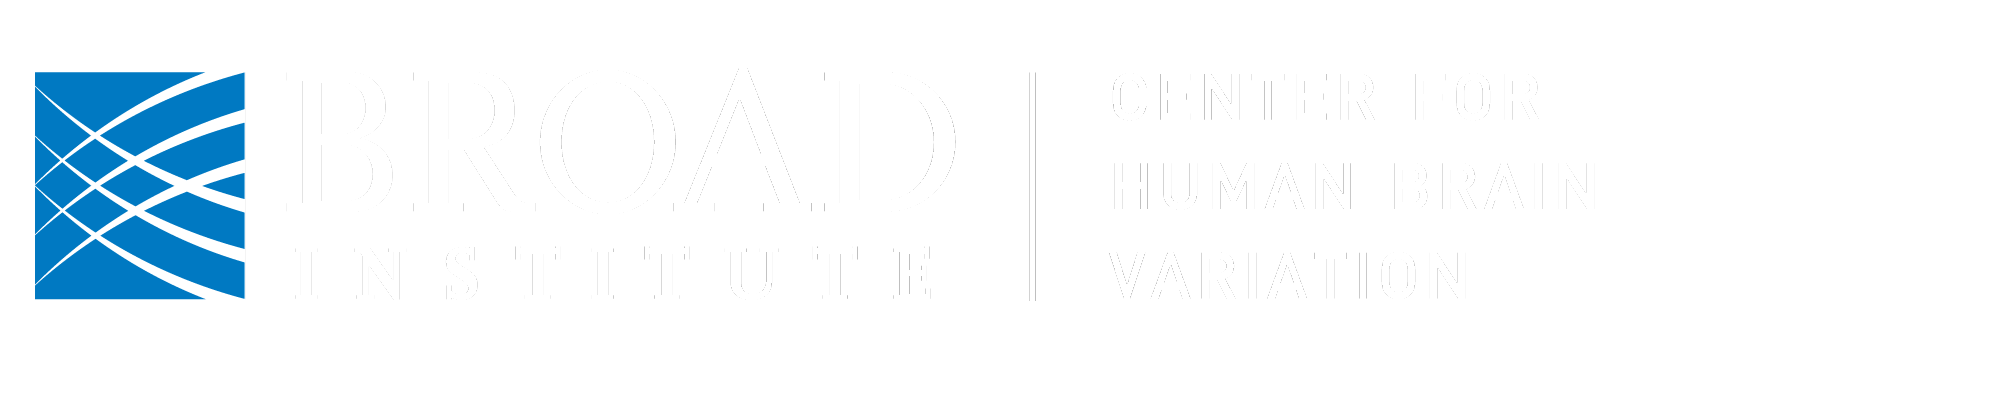 Center for Human Brain Variation logo